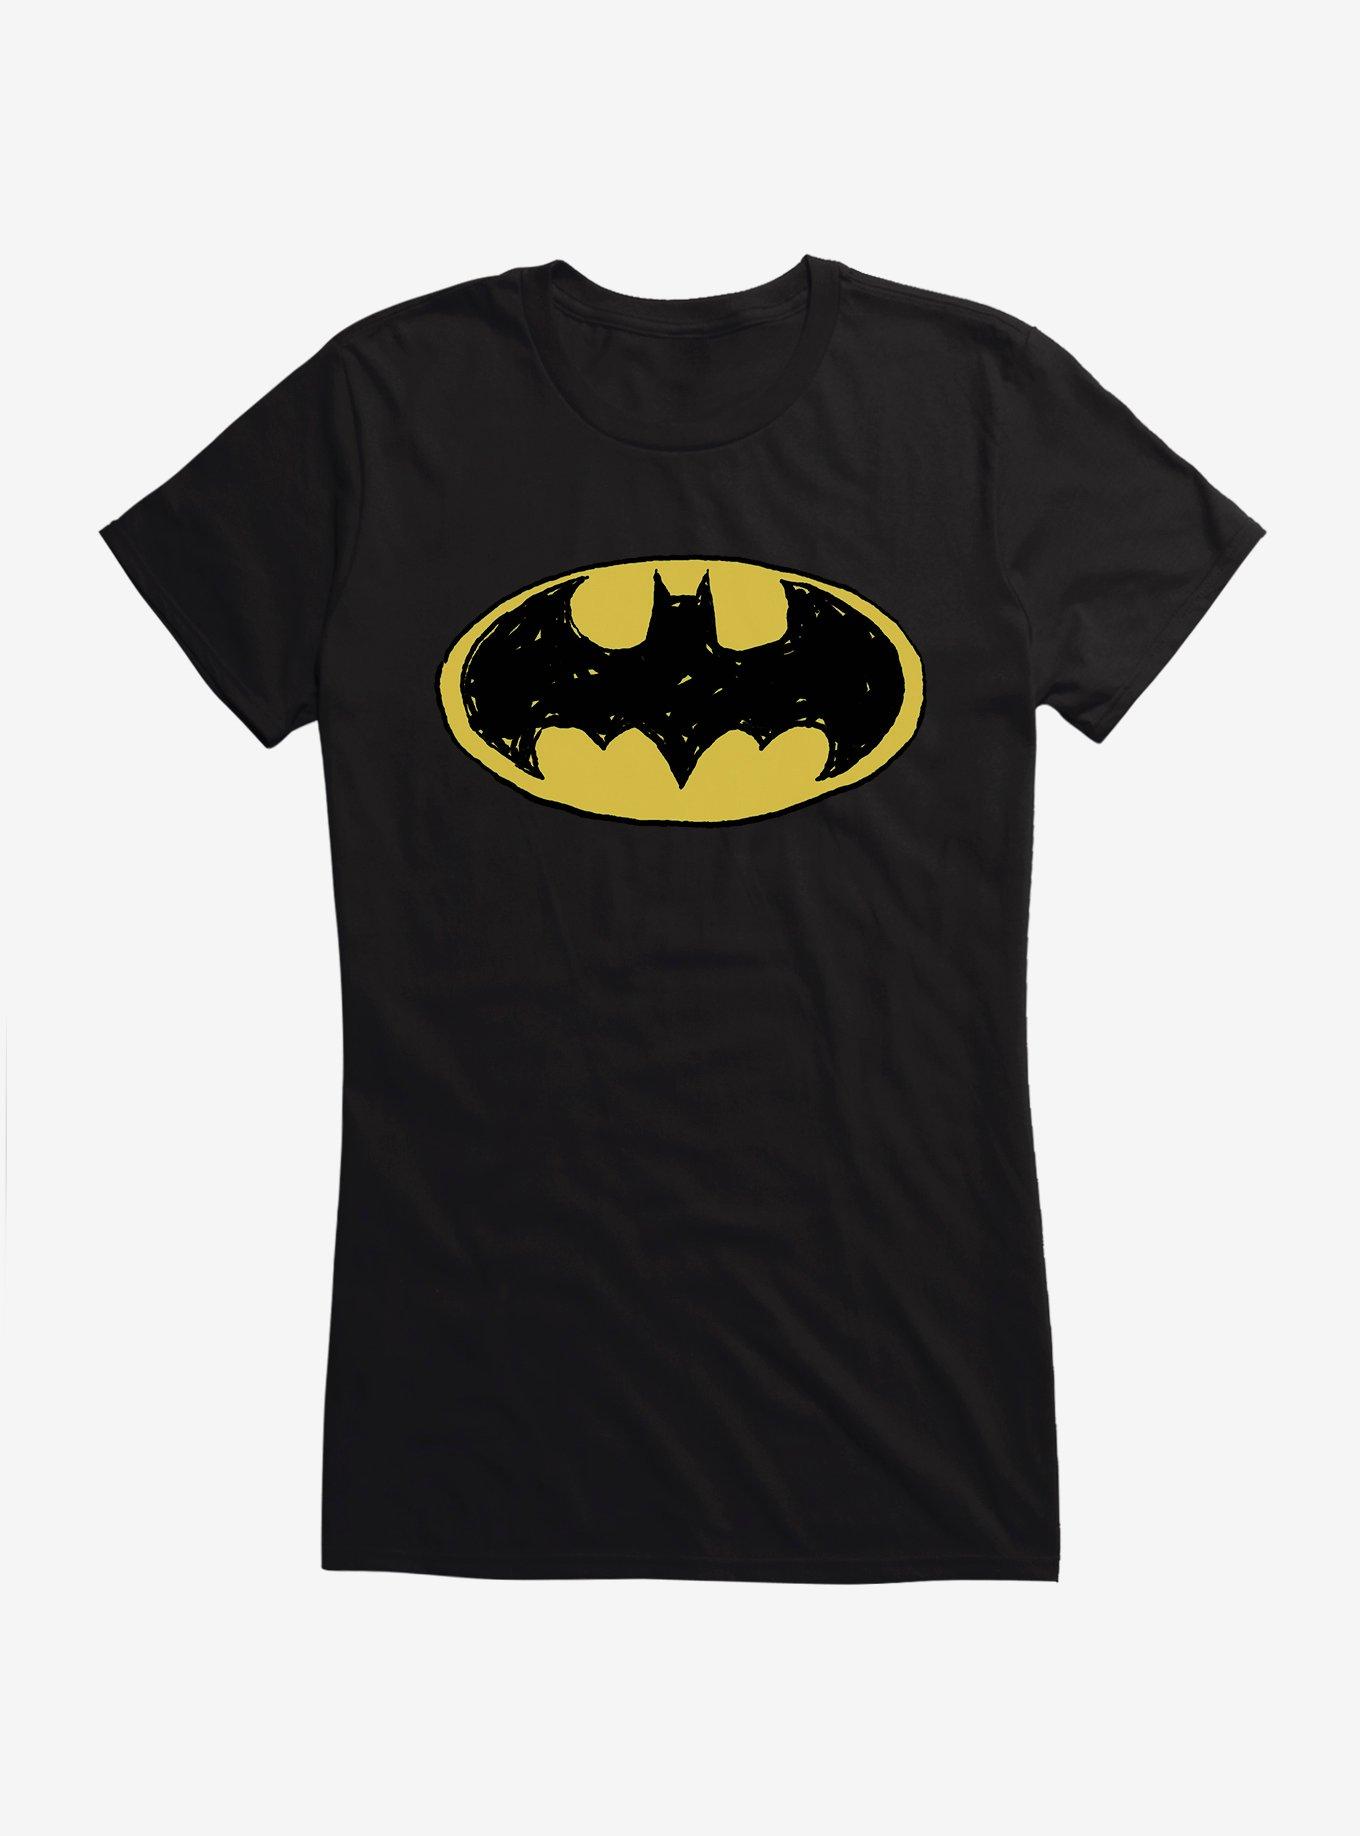 DC Comics Batman Bat Signal Logo Girls T-Shirt, BLACK, hi-res